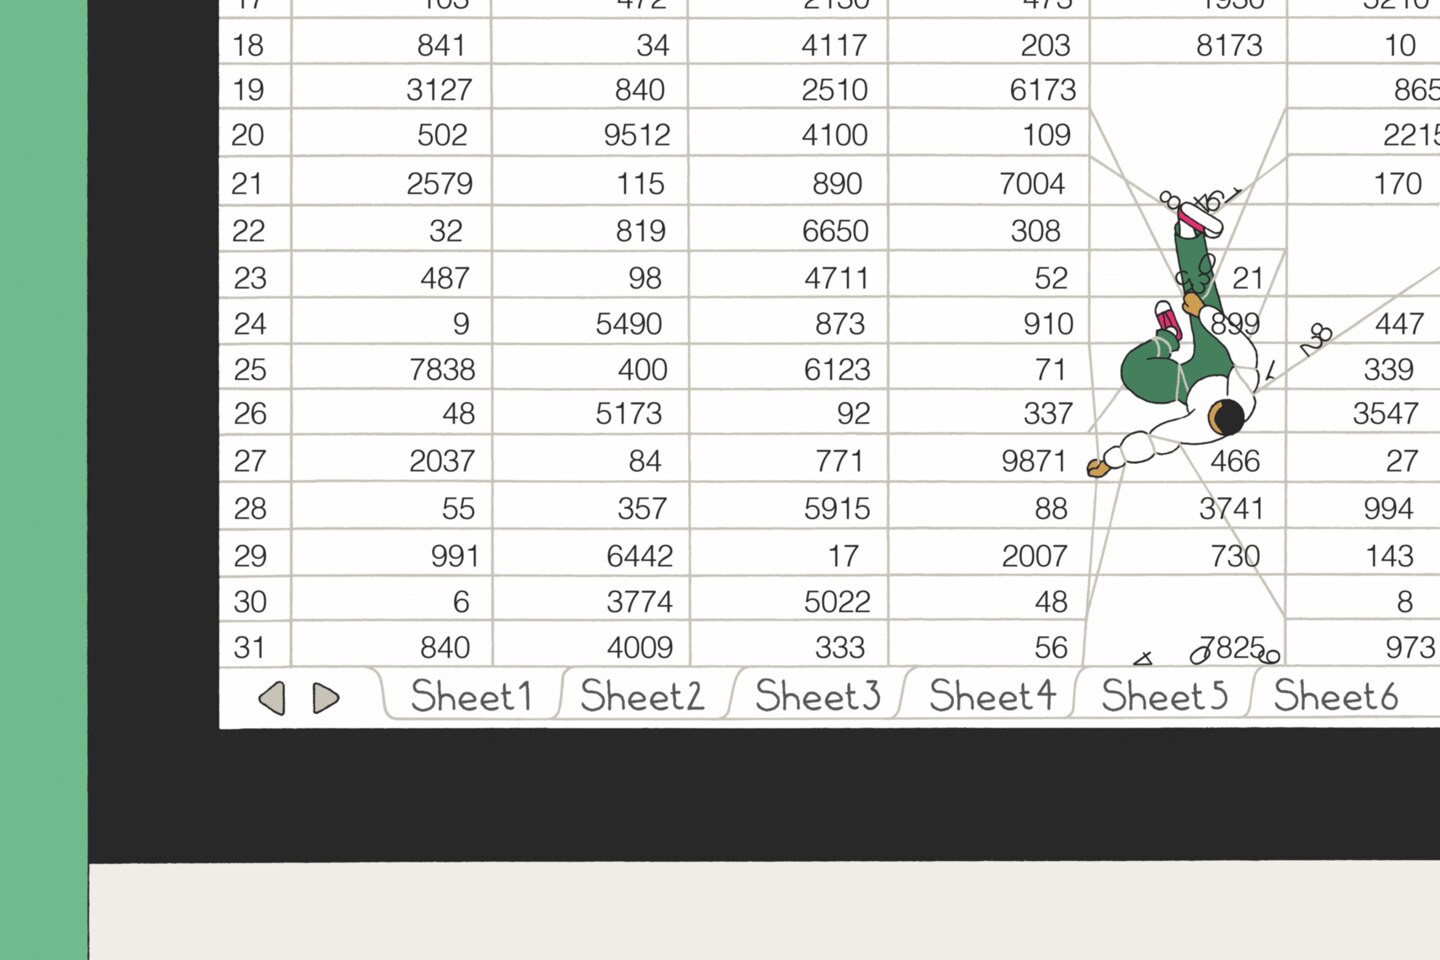 Die neuesten Versionen von Excel erlauben mehr als eine Million Zeilen mit Daten – da verheddert man sich schnell